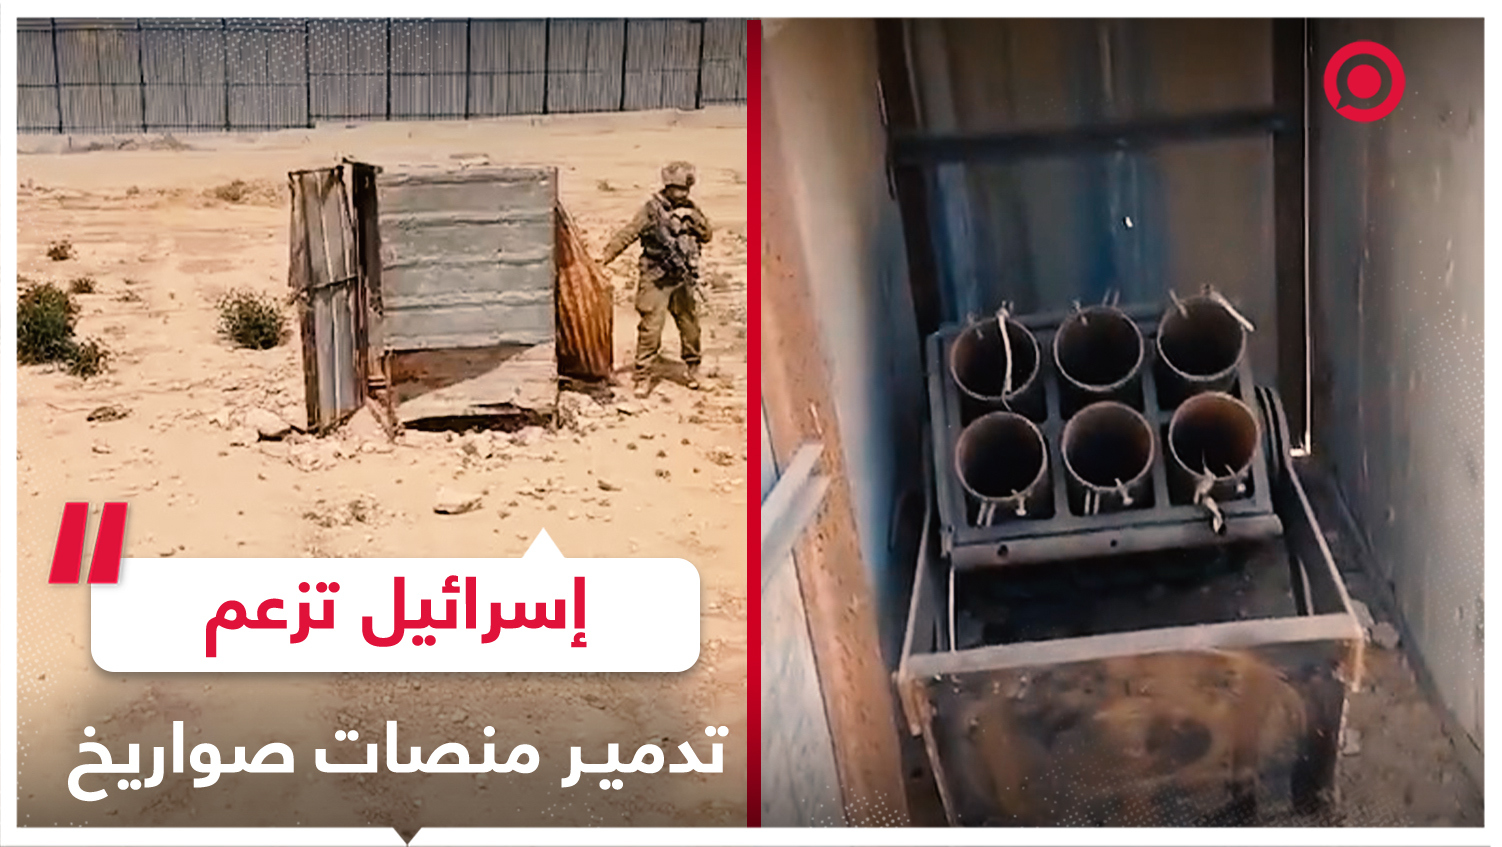 إسرائيل تنشر فيديو تزعم فيه أن قواتها وجدت ودمرت منصات إطلاق صواريخ في رفح